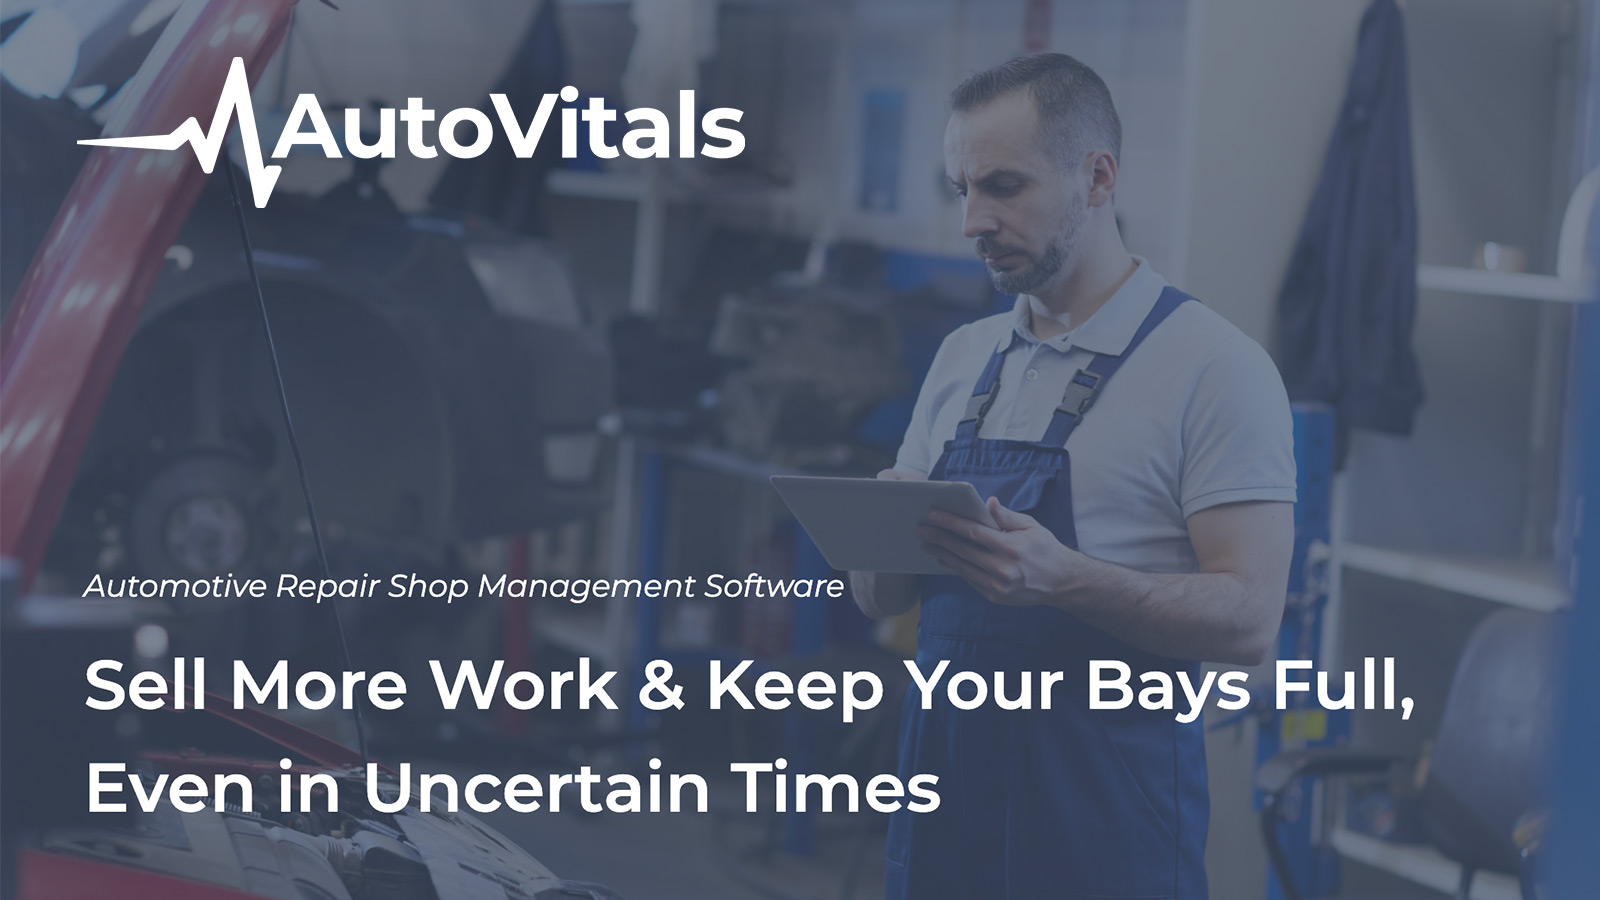 AutoVitals: Auto Repair Shop Software | The Digital Shop